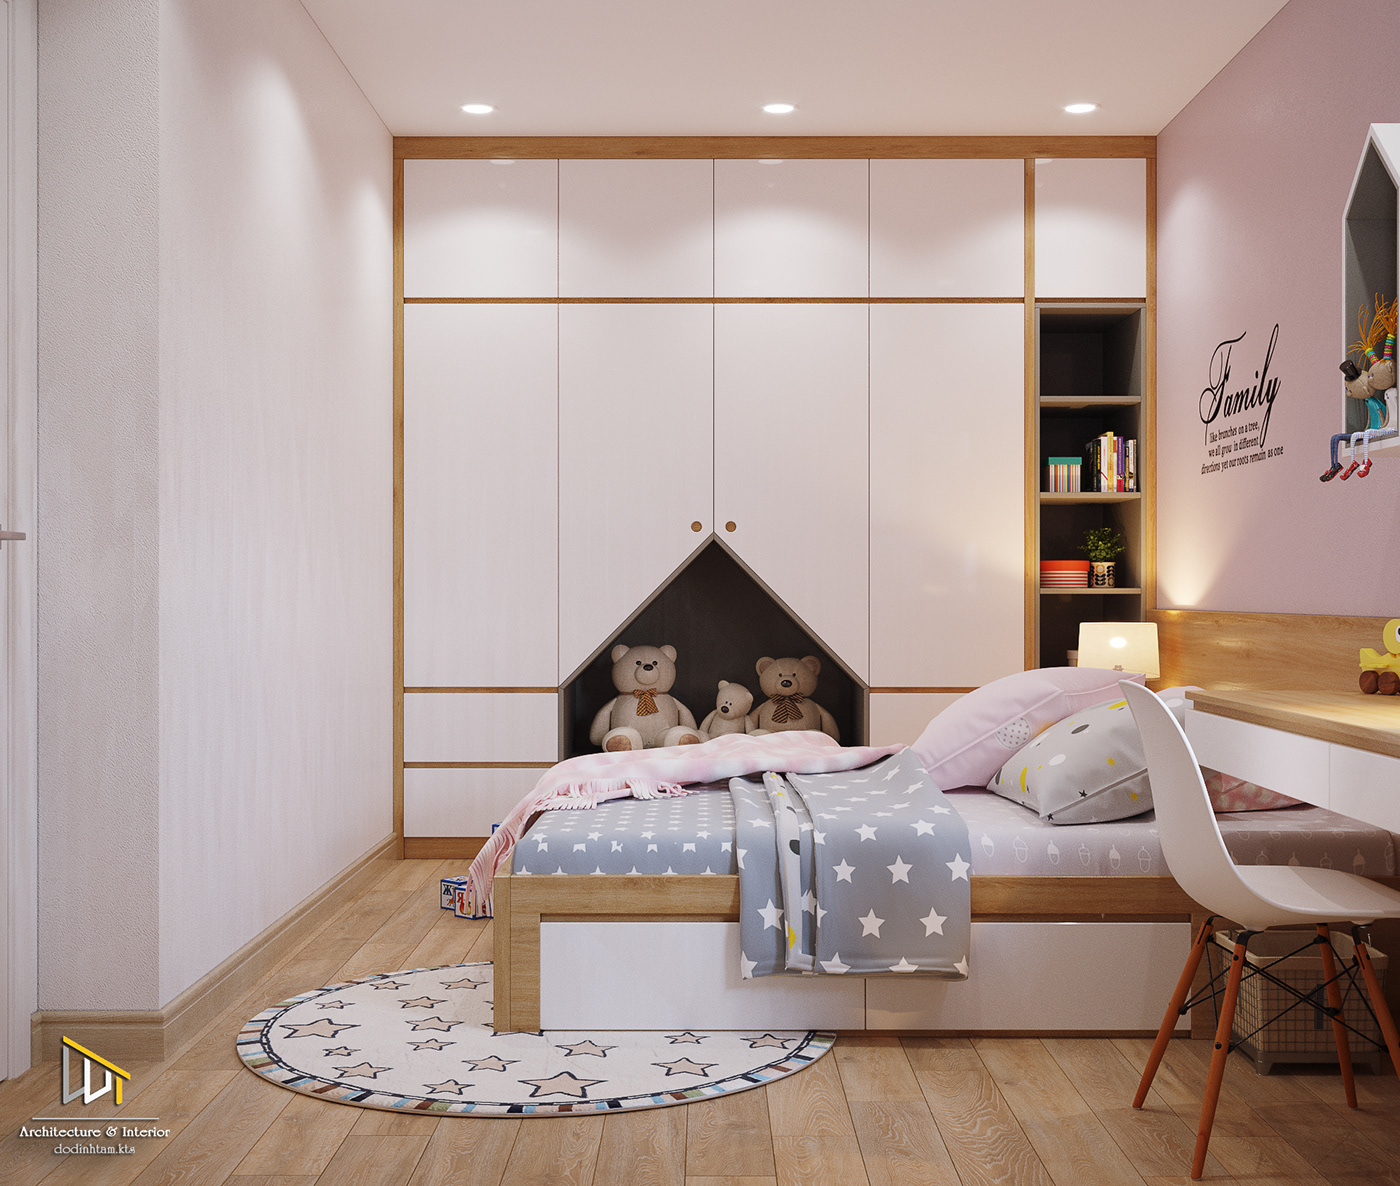 thiết kế nội thất chung cư tại Hà Nội 2 0 1 8  D E S I G N _ APARTMENT INTERIOR DESIGN_DA GOLD SEASONS 13 1538063549